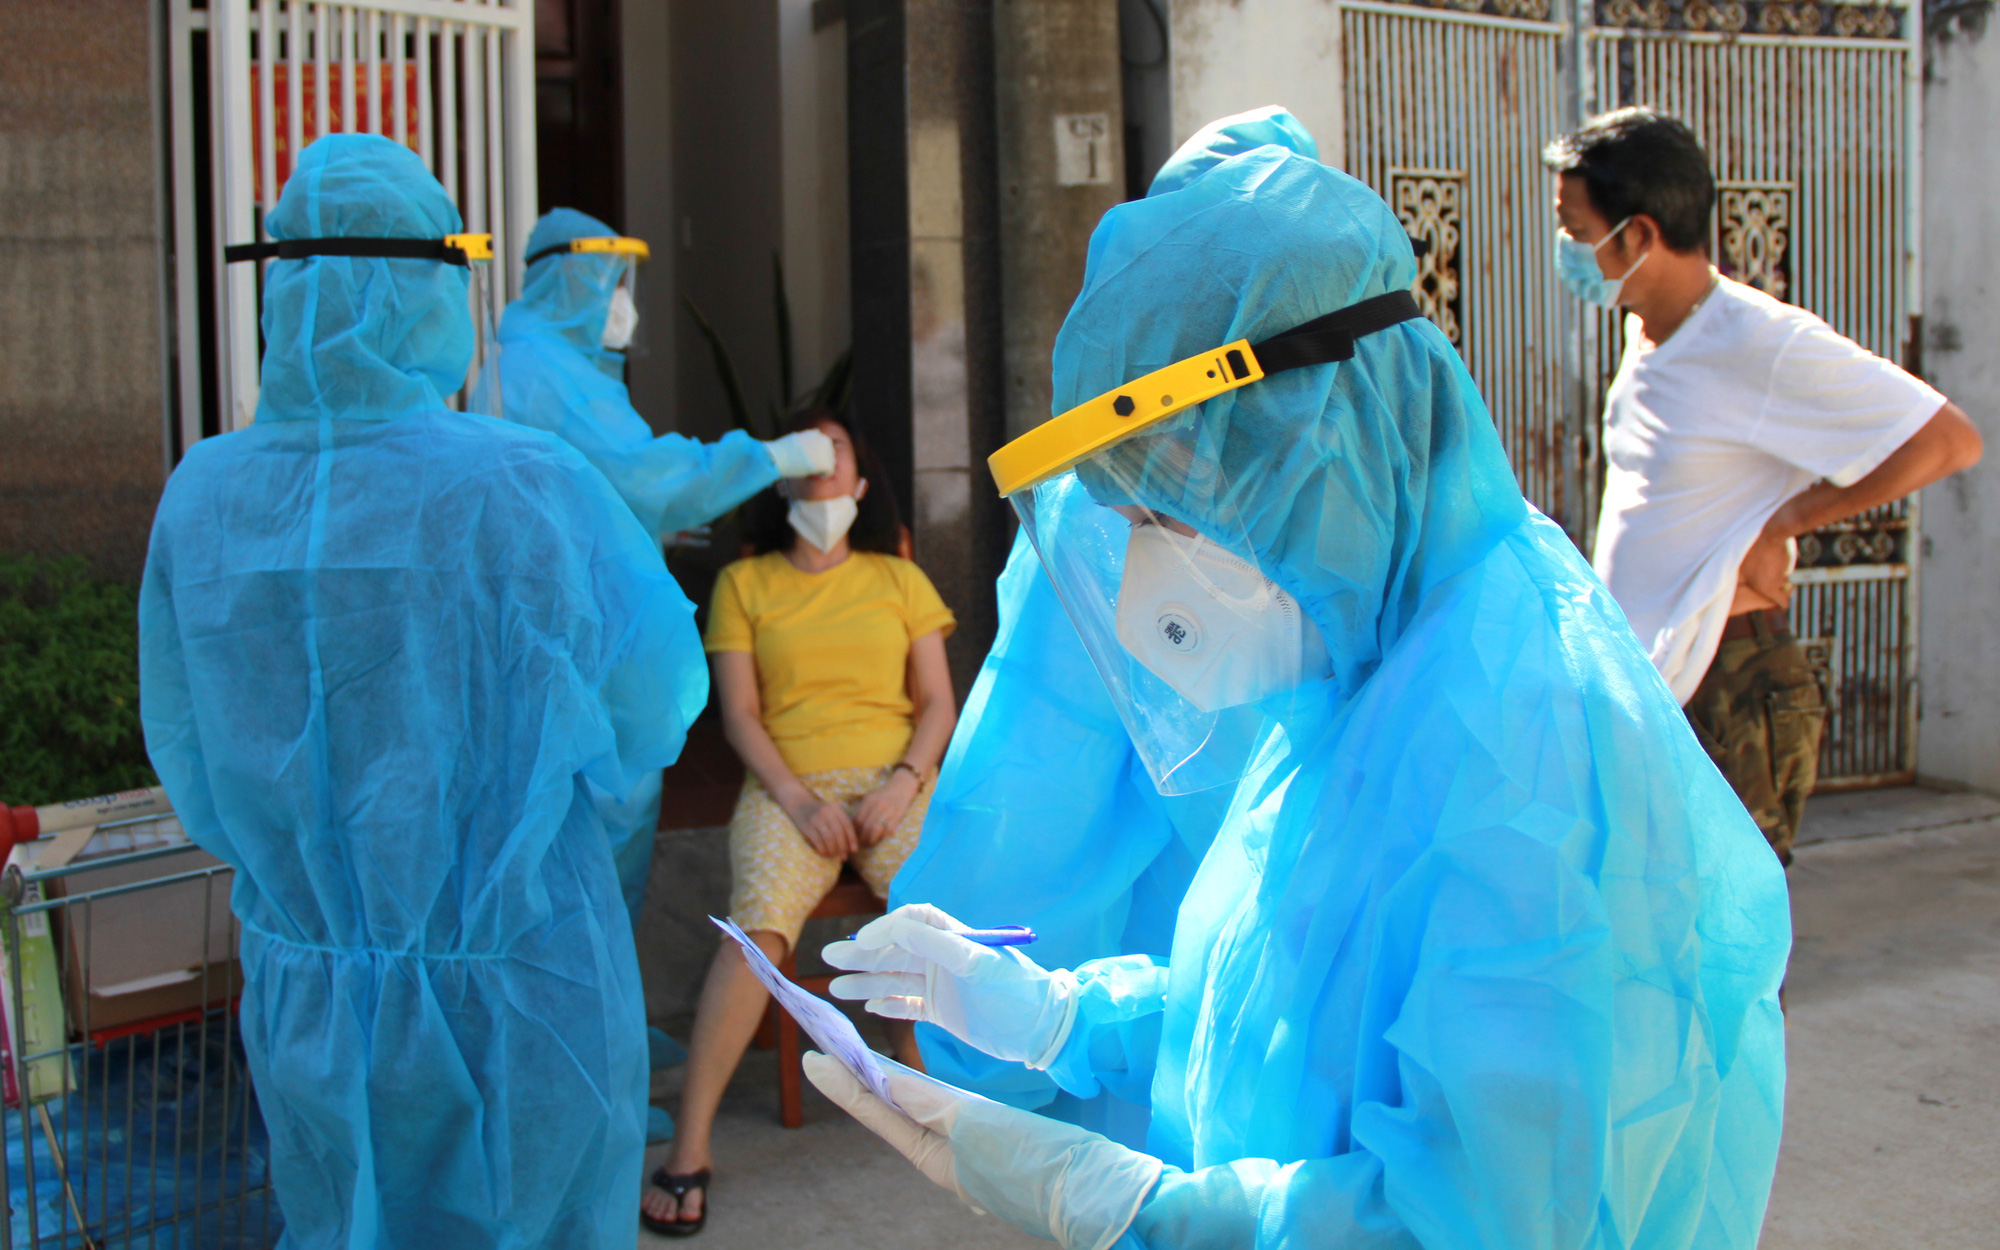 Quảng Trị: Bệnh nhân Covid-19 nhập cảnh trái phép kể hành trình "mang" con virus từ Lào về